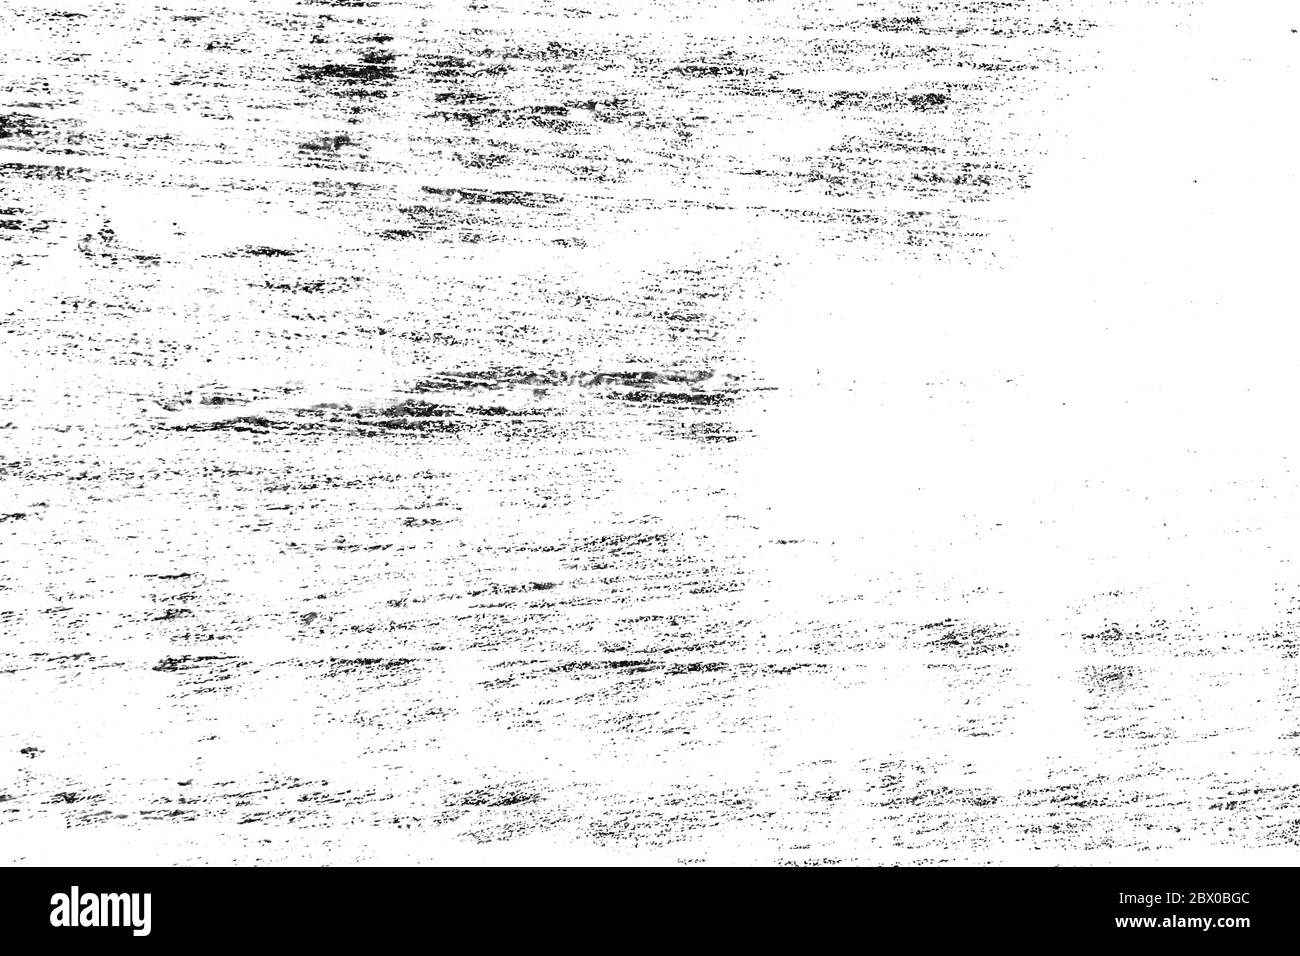 Sfondo scuro grunge. Vecchia superficie in bianco e nero. Trama astratta macchie sporche, crepe, schizzi su tela vecchia. Foto Stock